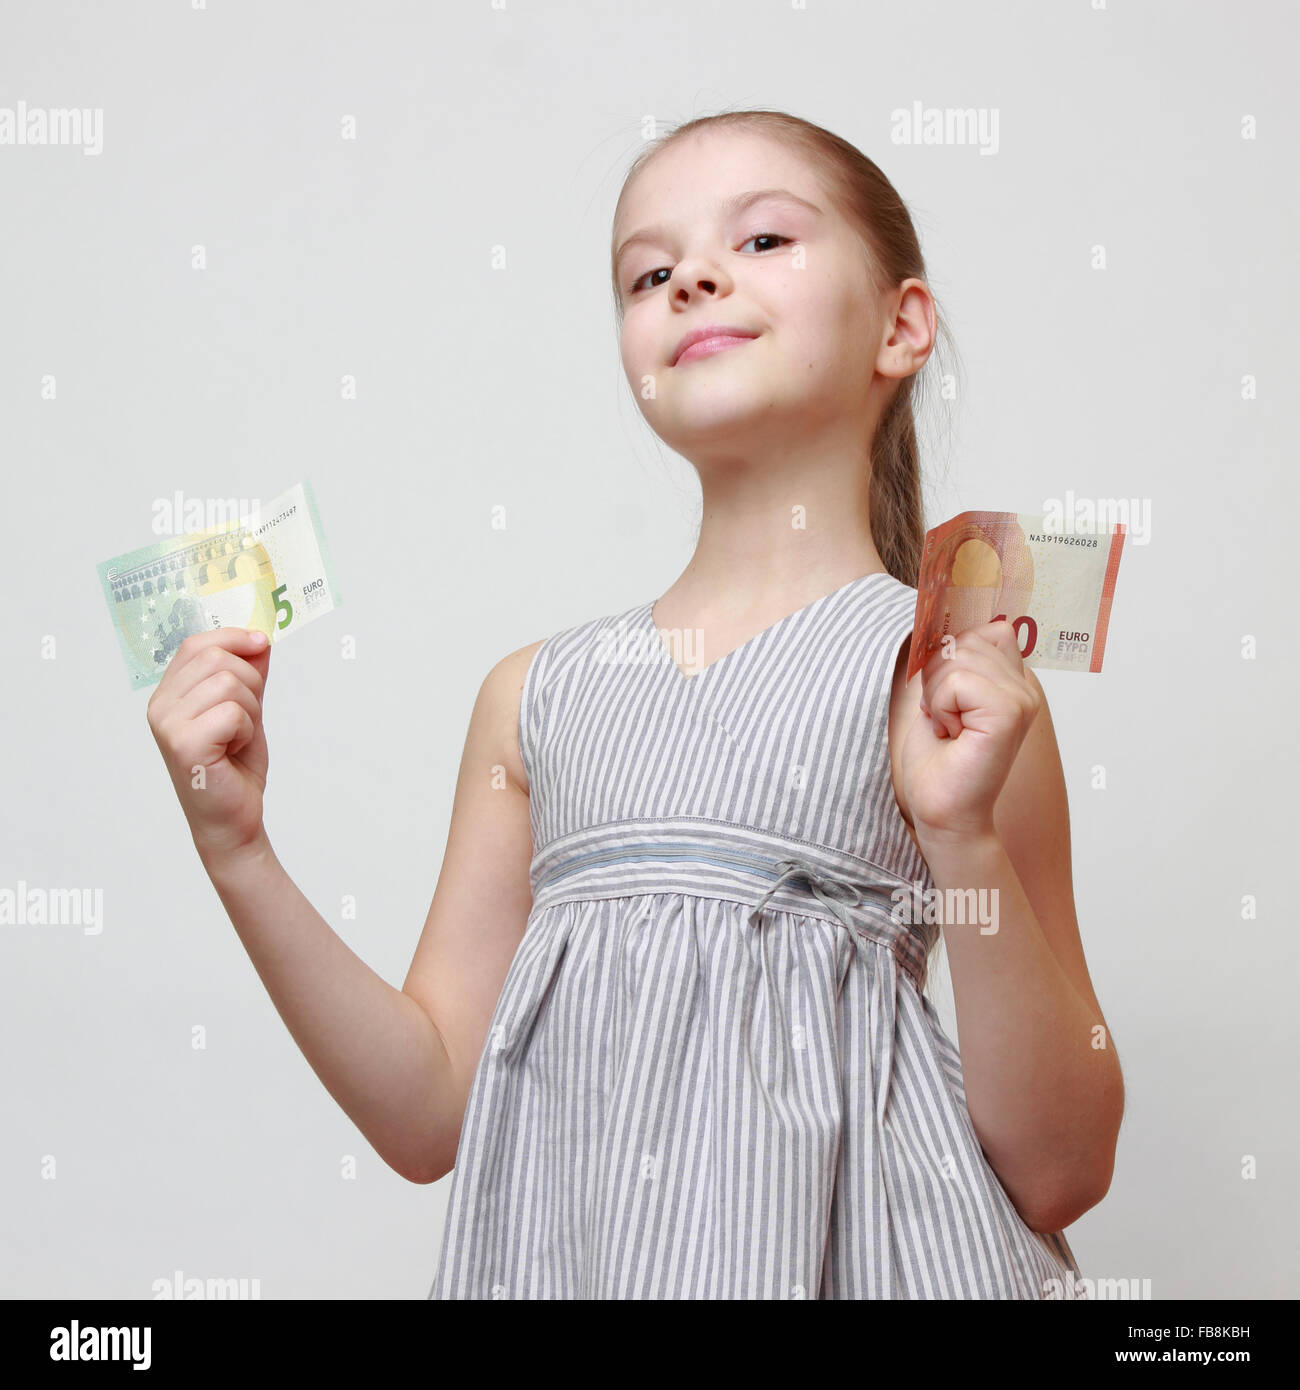 Wunderschönes kleines Mädchen hält Euro-Bargeld-Banknoten Stockfoto